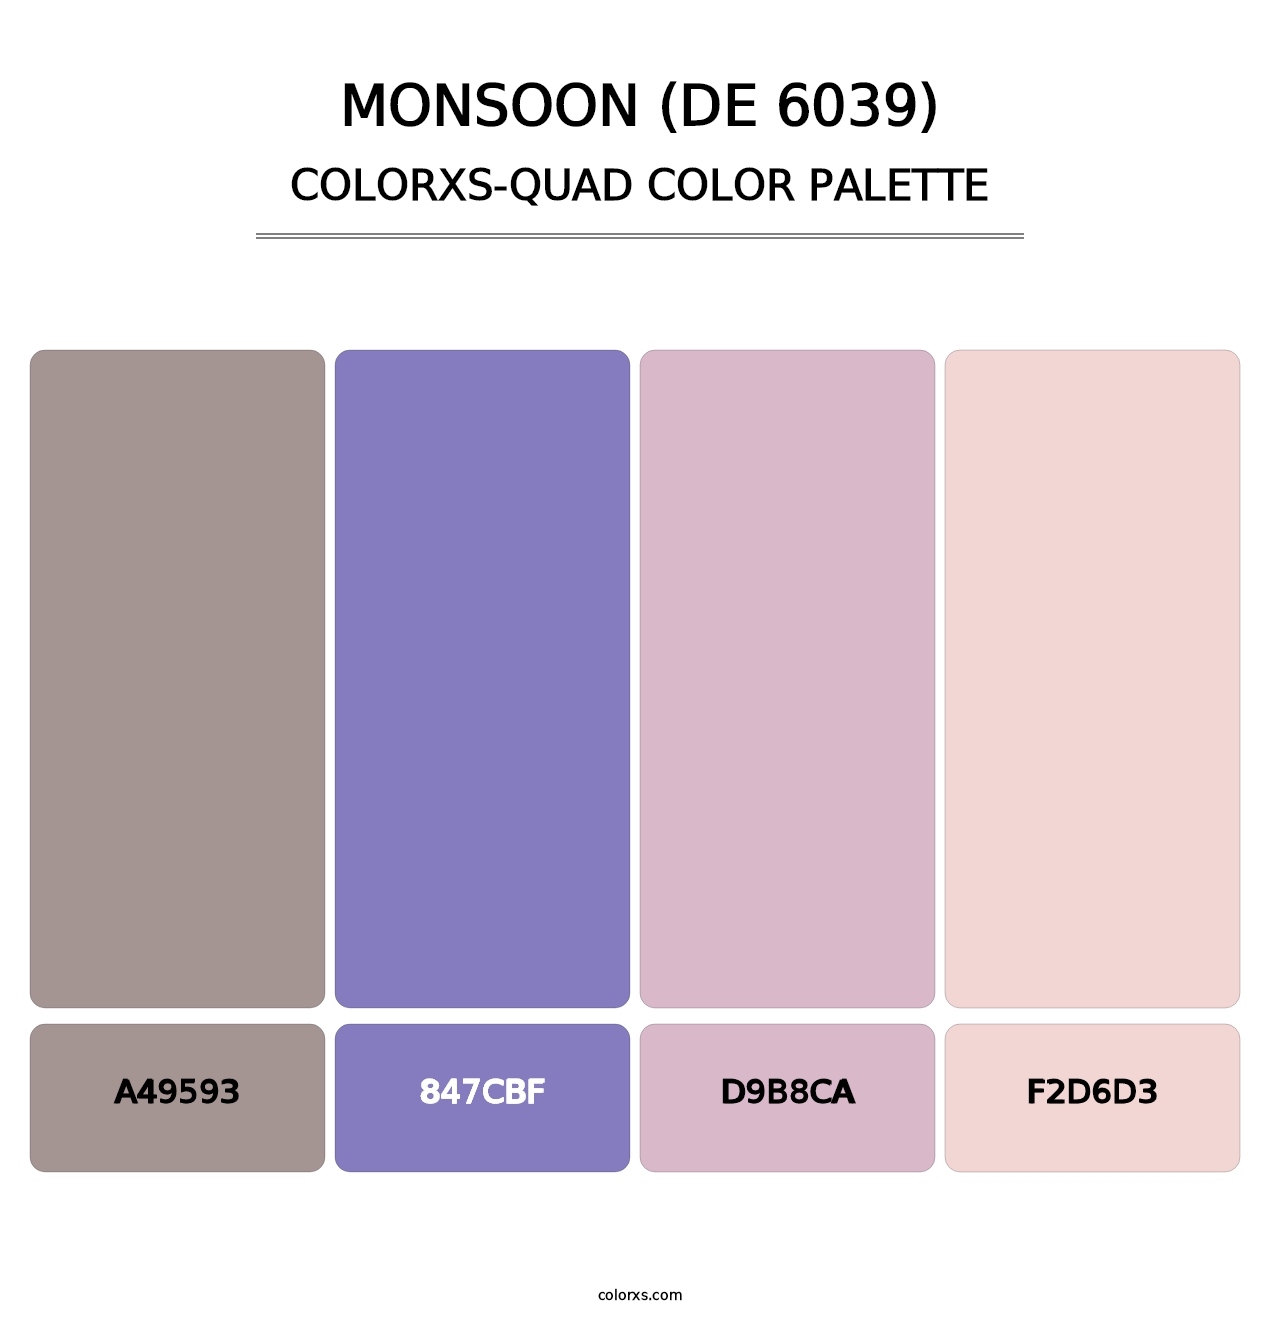 Monsoon (DE 6039) - Colorxs Quad Palette